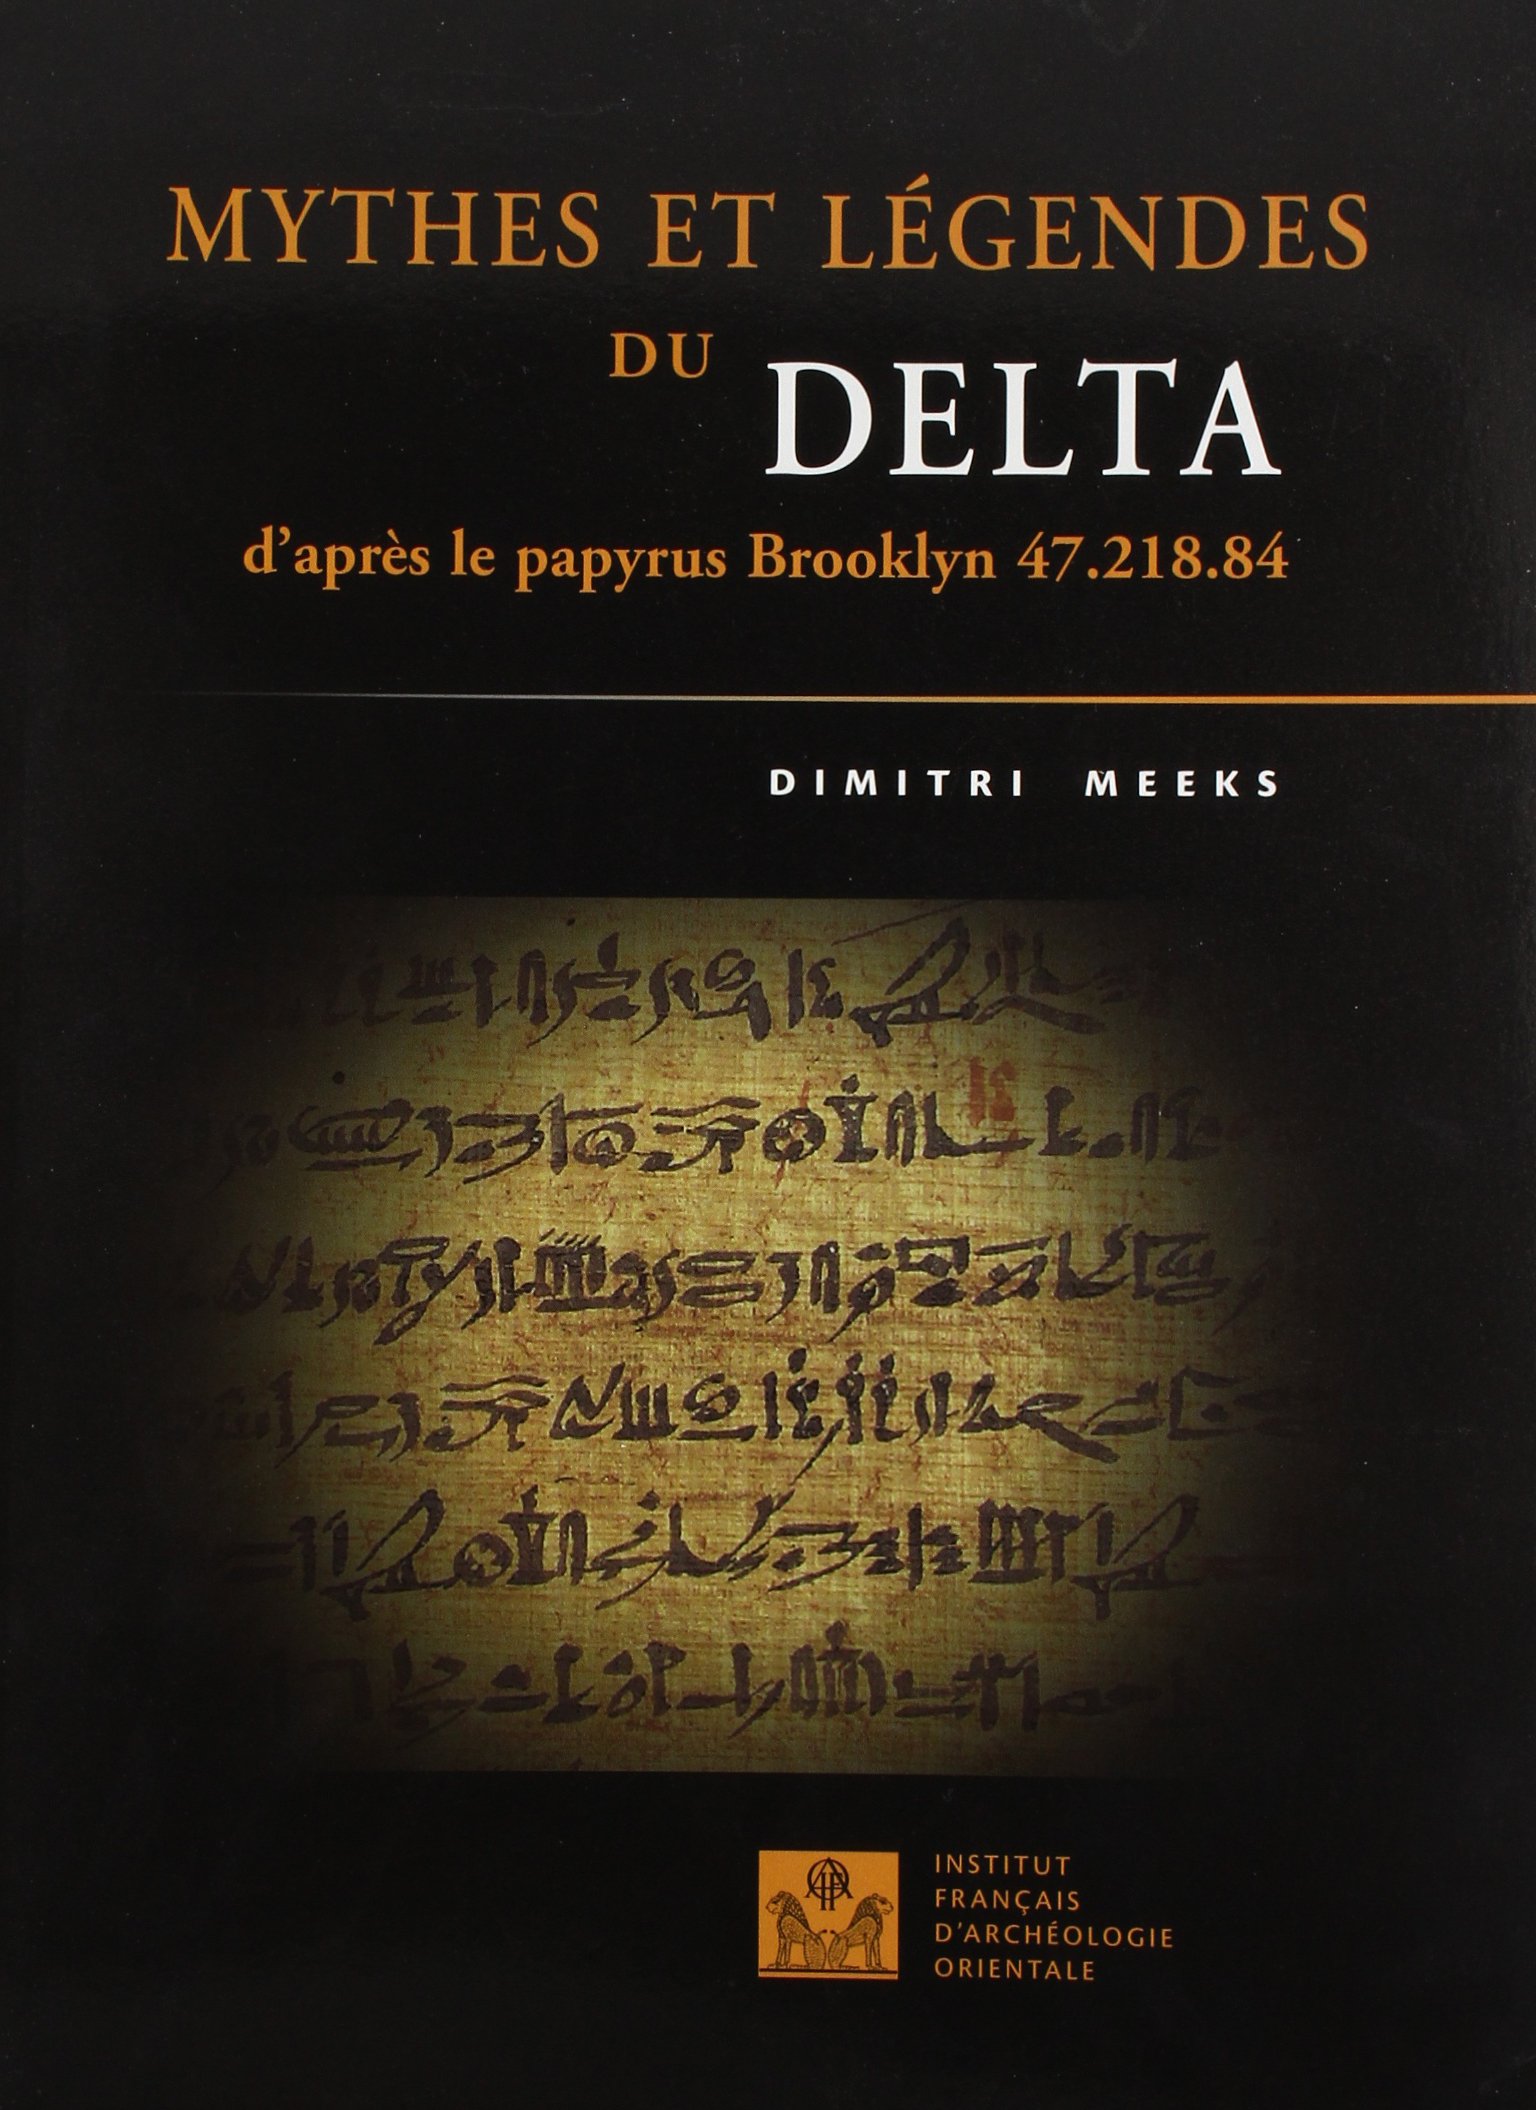 ÉPUISÉ - Mythes et légendes du Delta : D'après le papyrus Brooklyn 47.218.84, 2006.